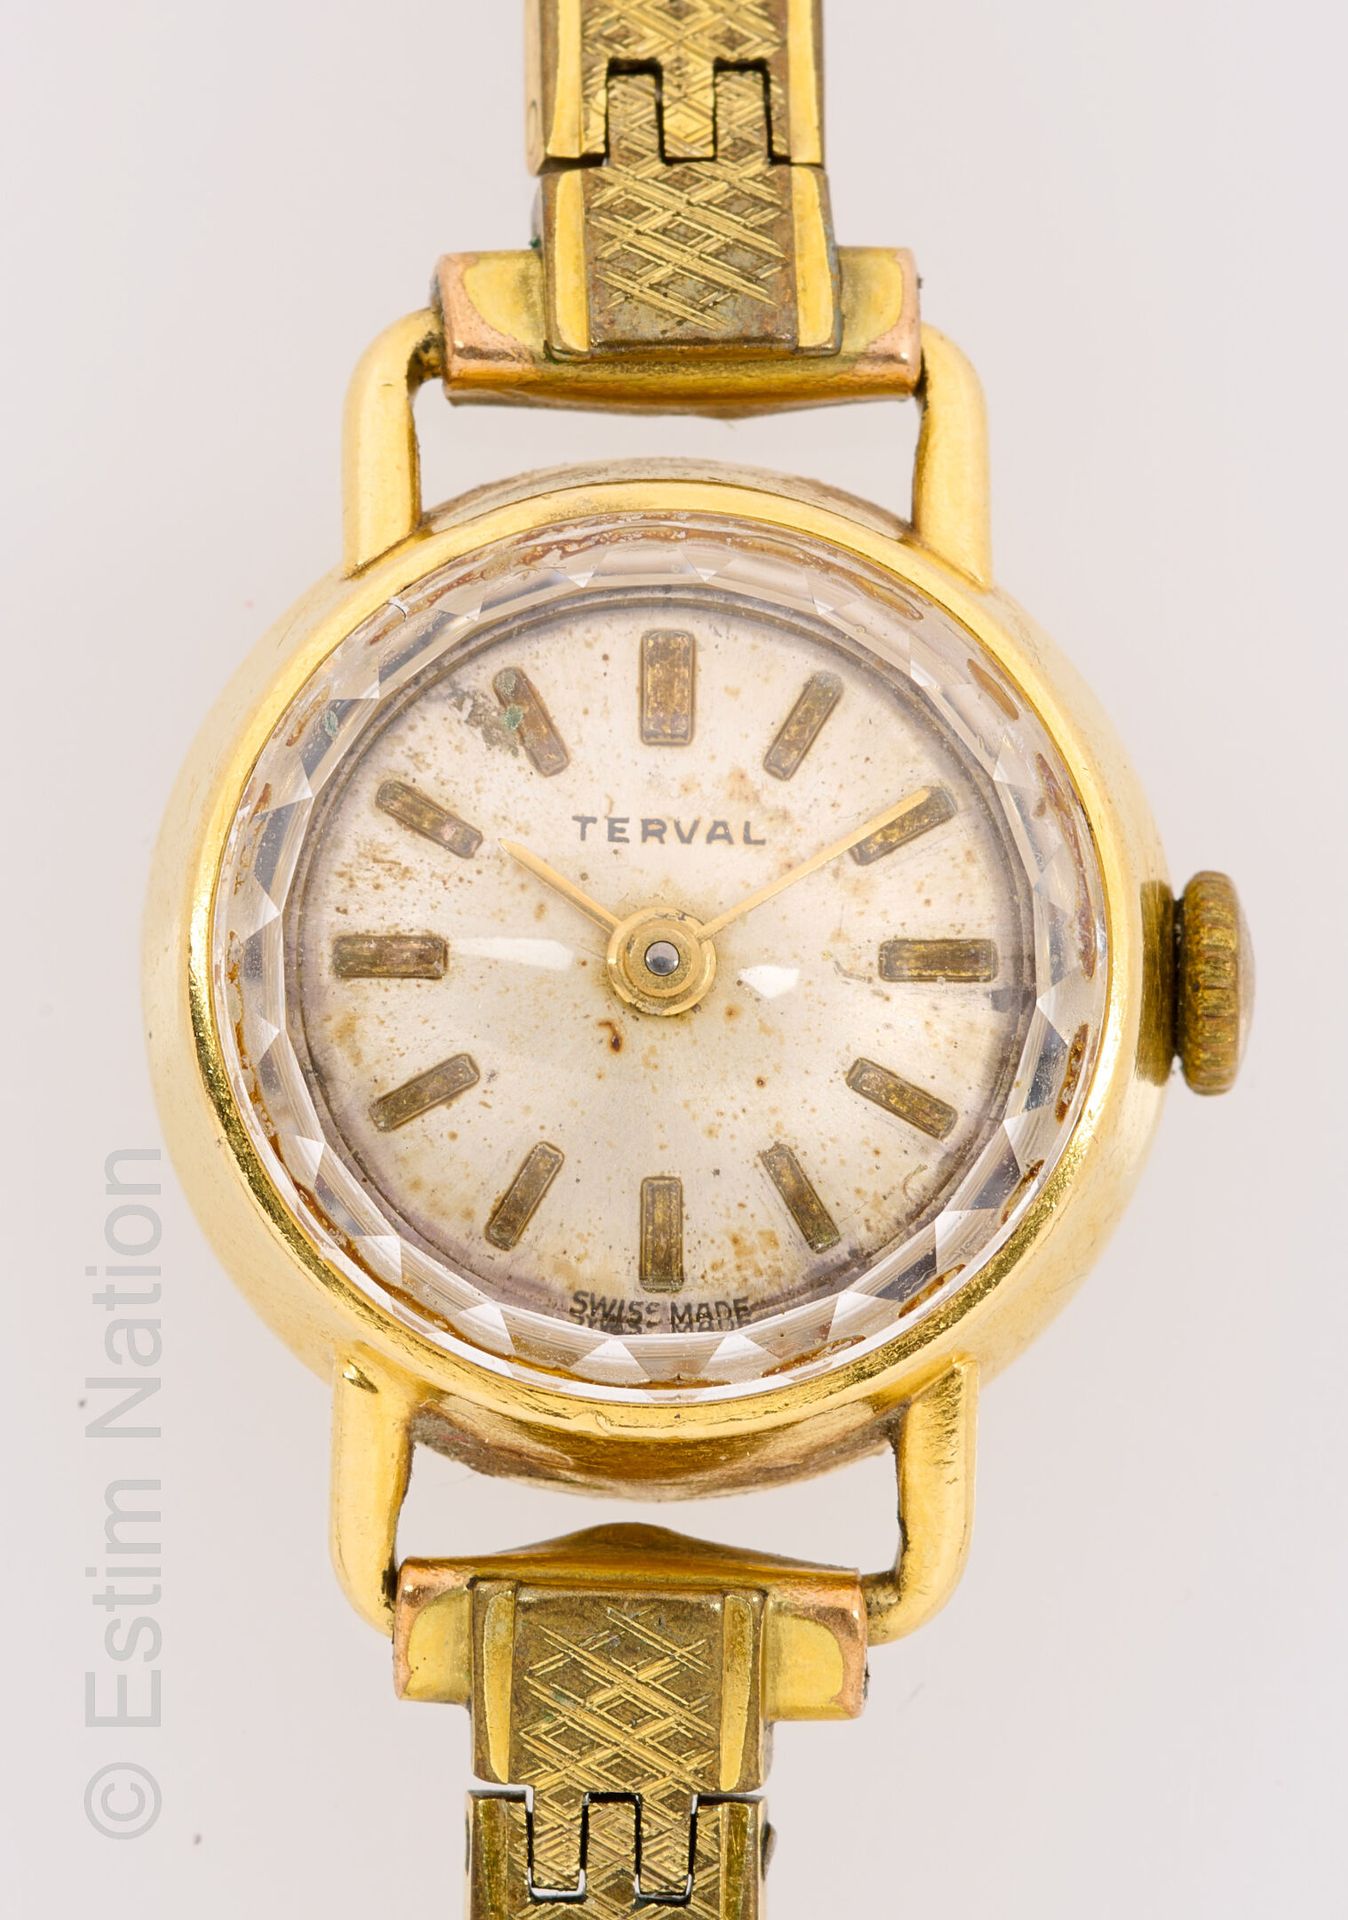 Terval Damenuhr aus 18 Karat Gelbgold 750 Tausendstel mit mechanischem Uhrwerk.
&hellip;